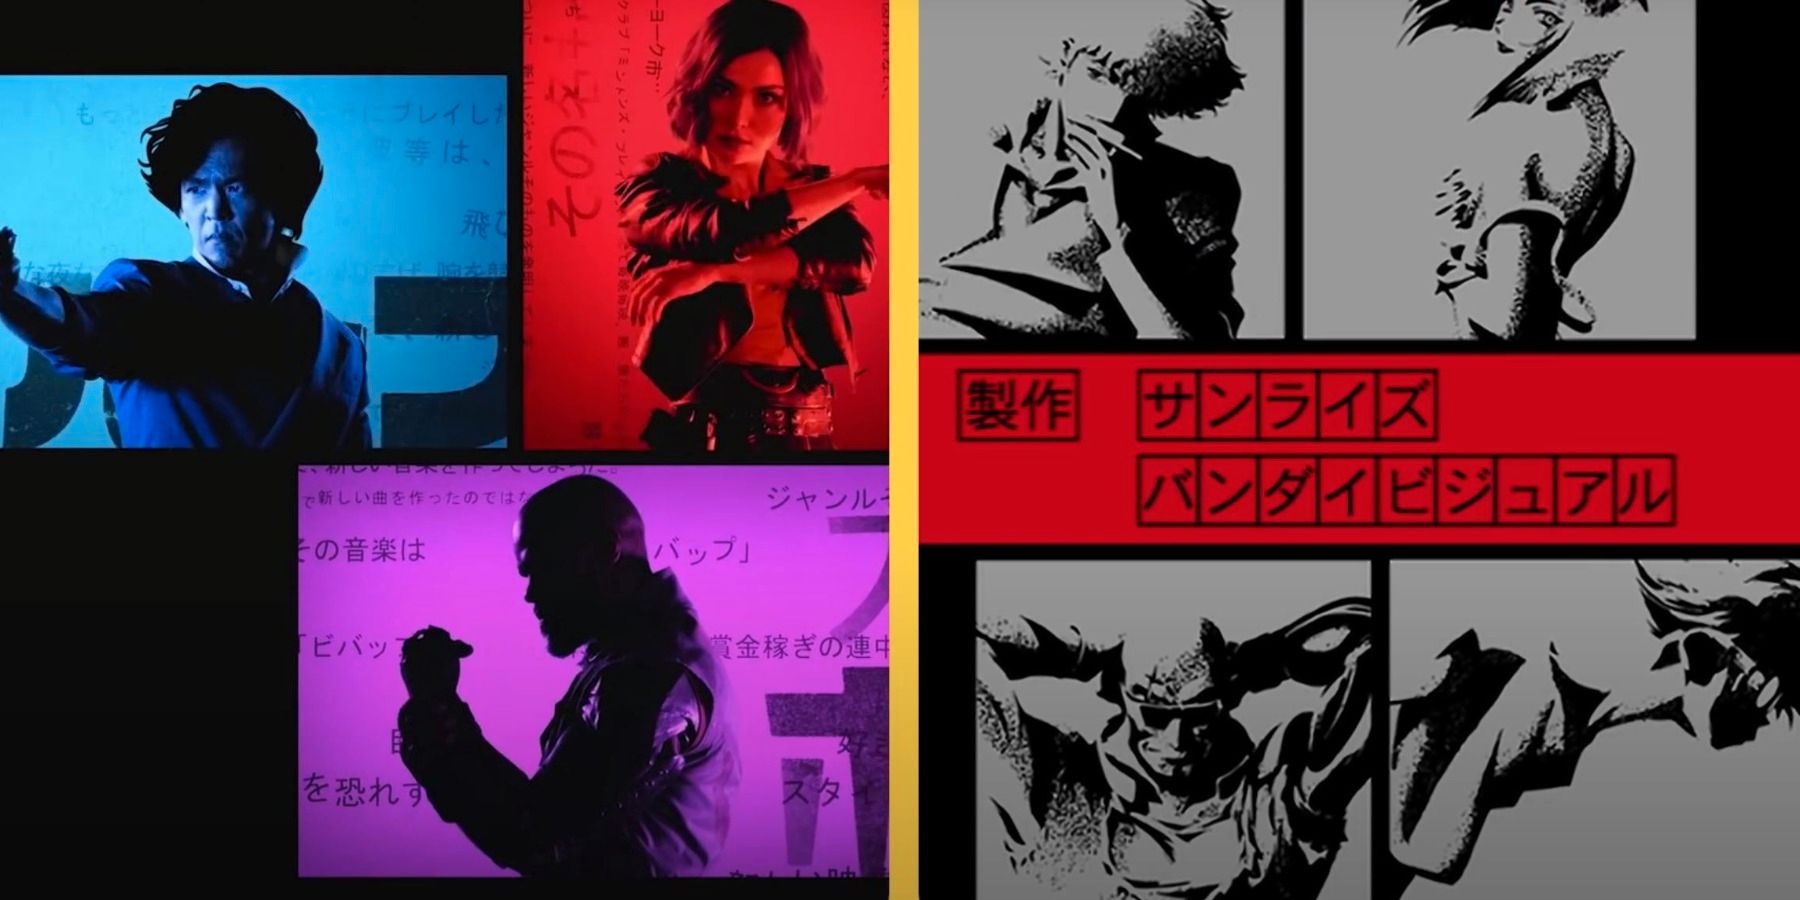 Η εισαγωγή του Netflix του Cowboy Bebop συγκρίνεται δίπλα-δίπλα με το anime